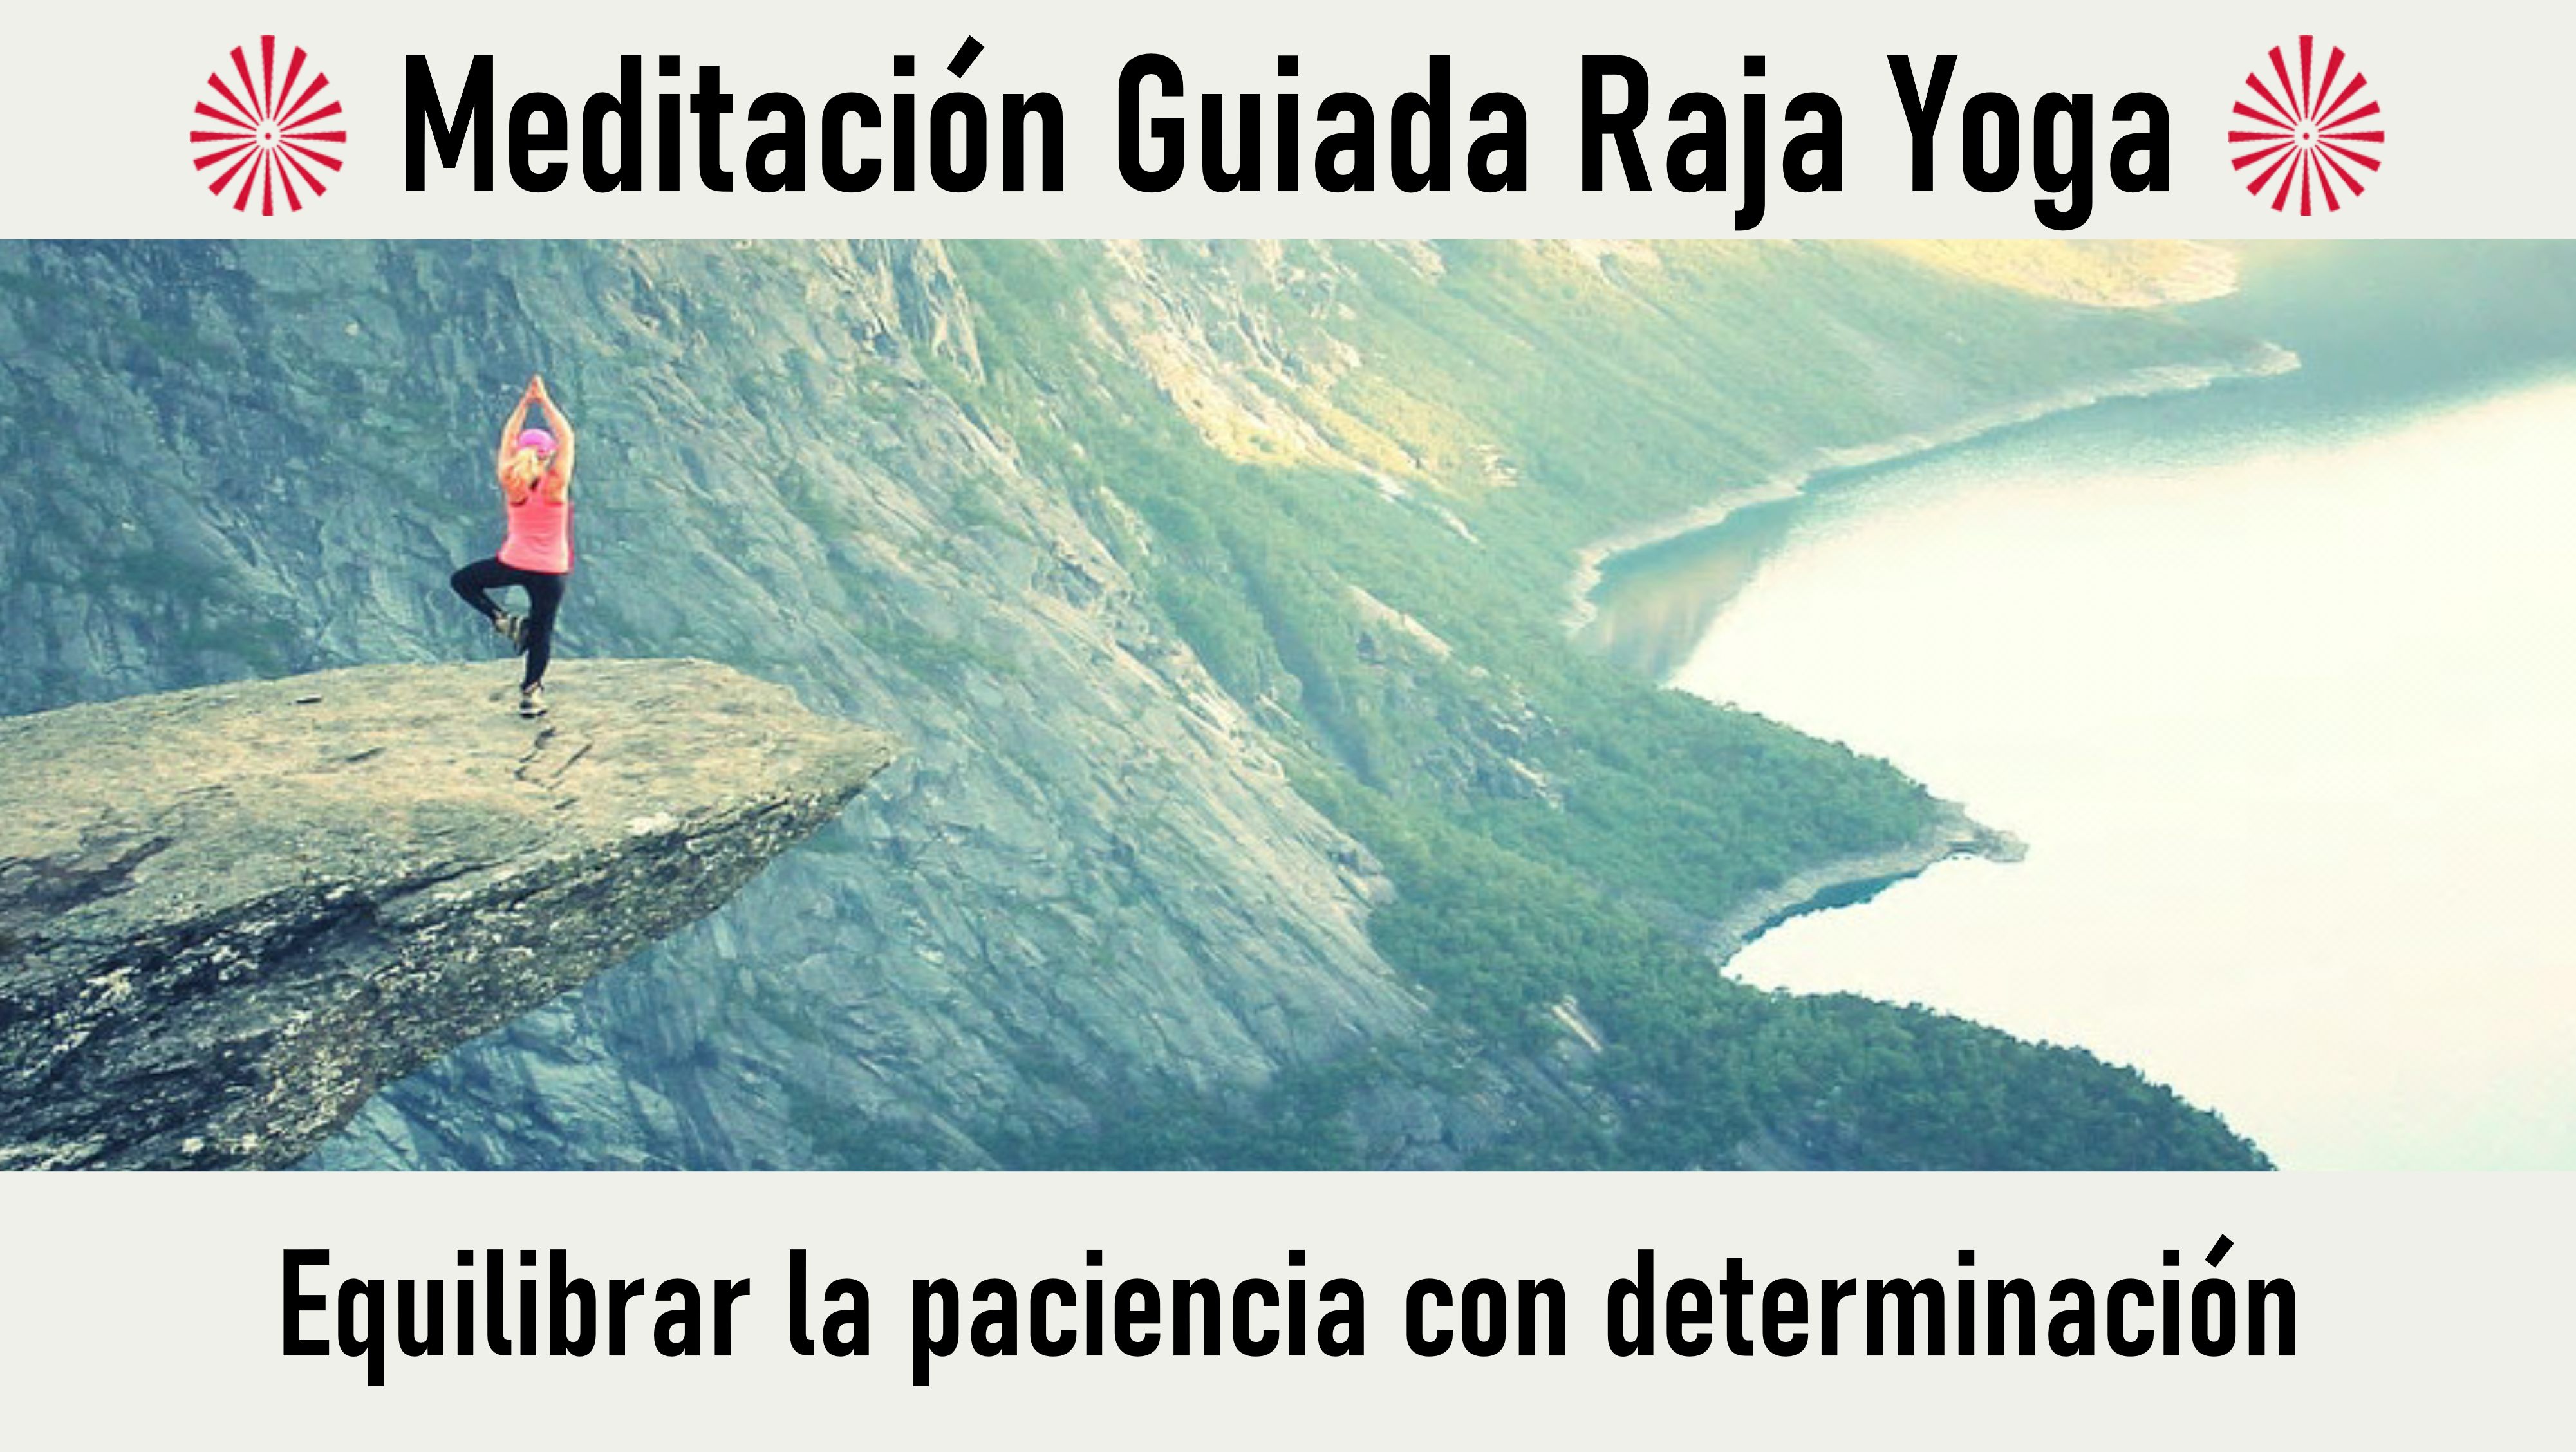 Meditación Raja Yoga: Equilibrar la paciencia con determinación (5 Septiembre 2020) On-line desde Valencia